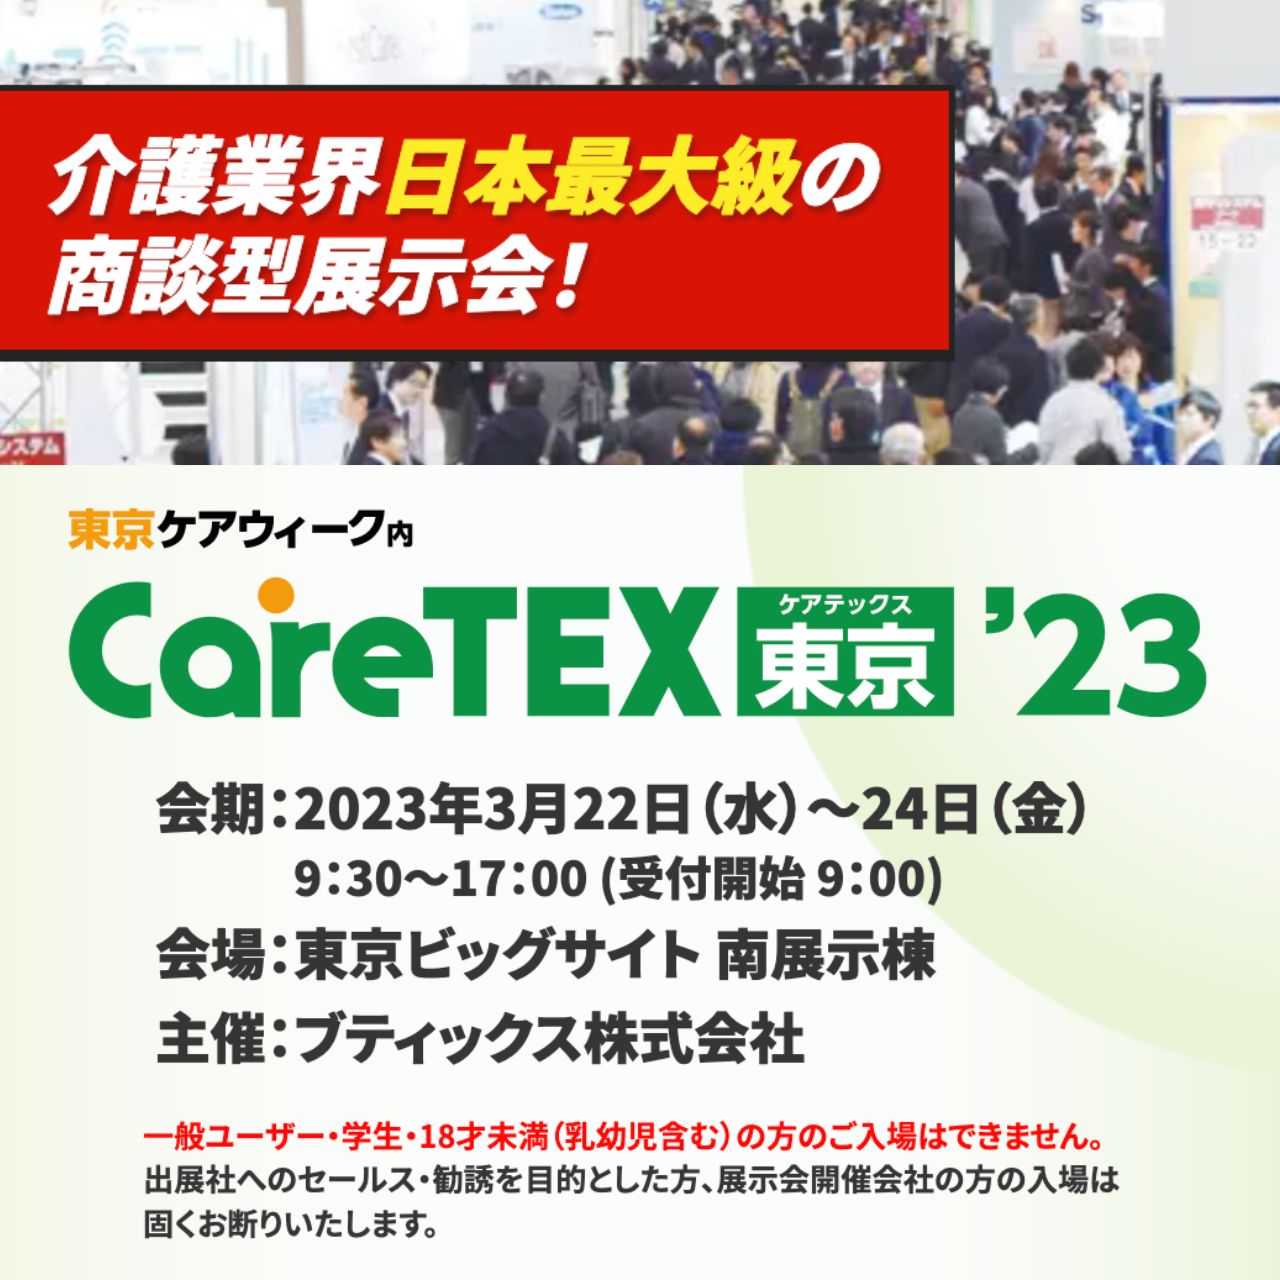 CareTEX東京’２３にタートルジムを出展します！